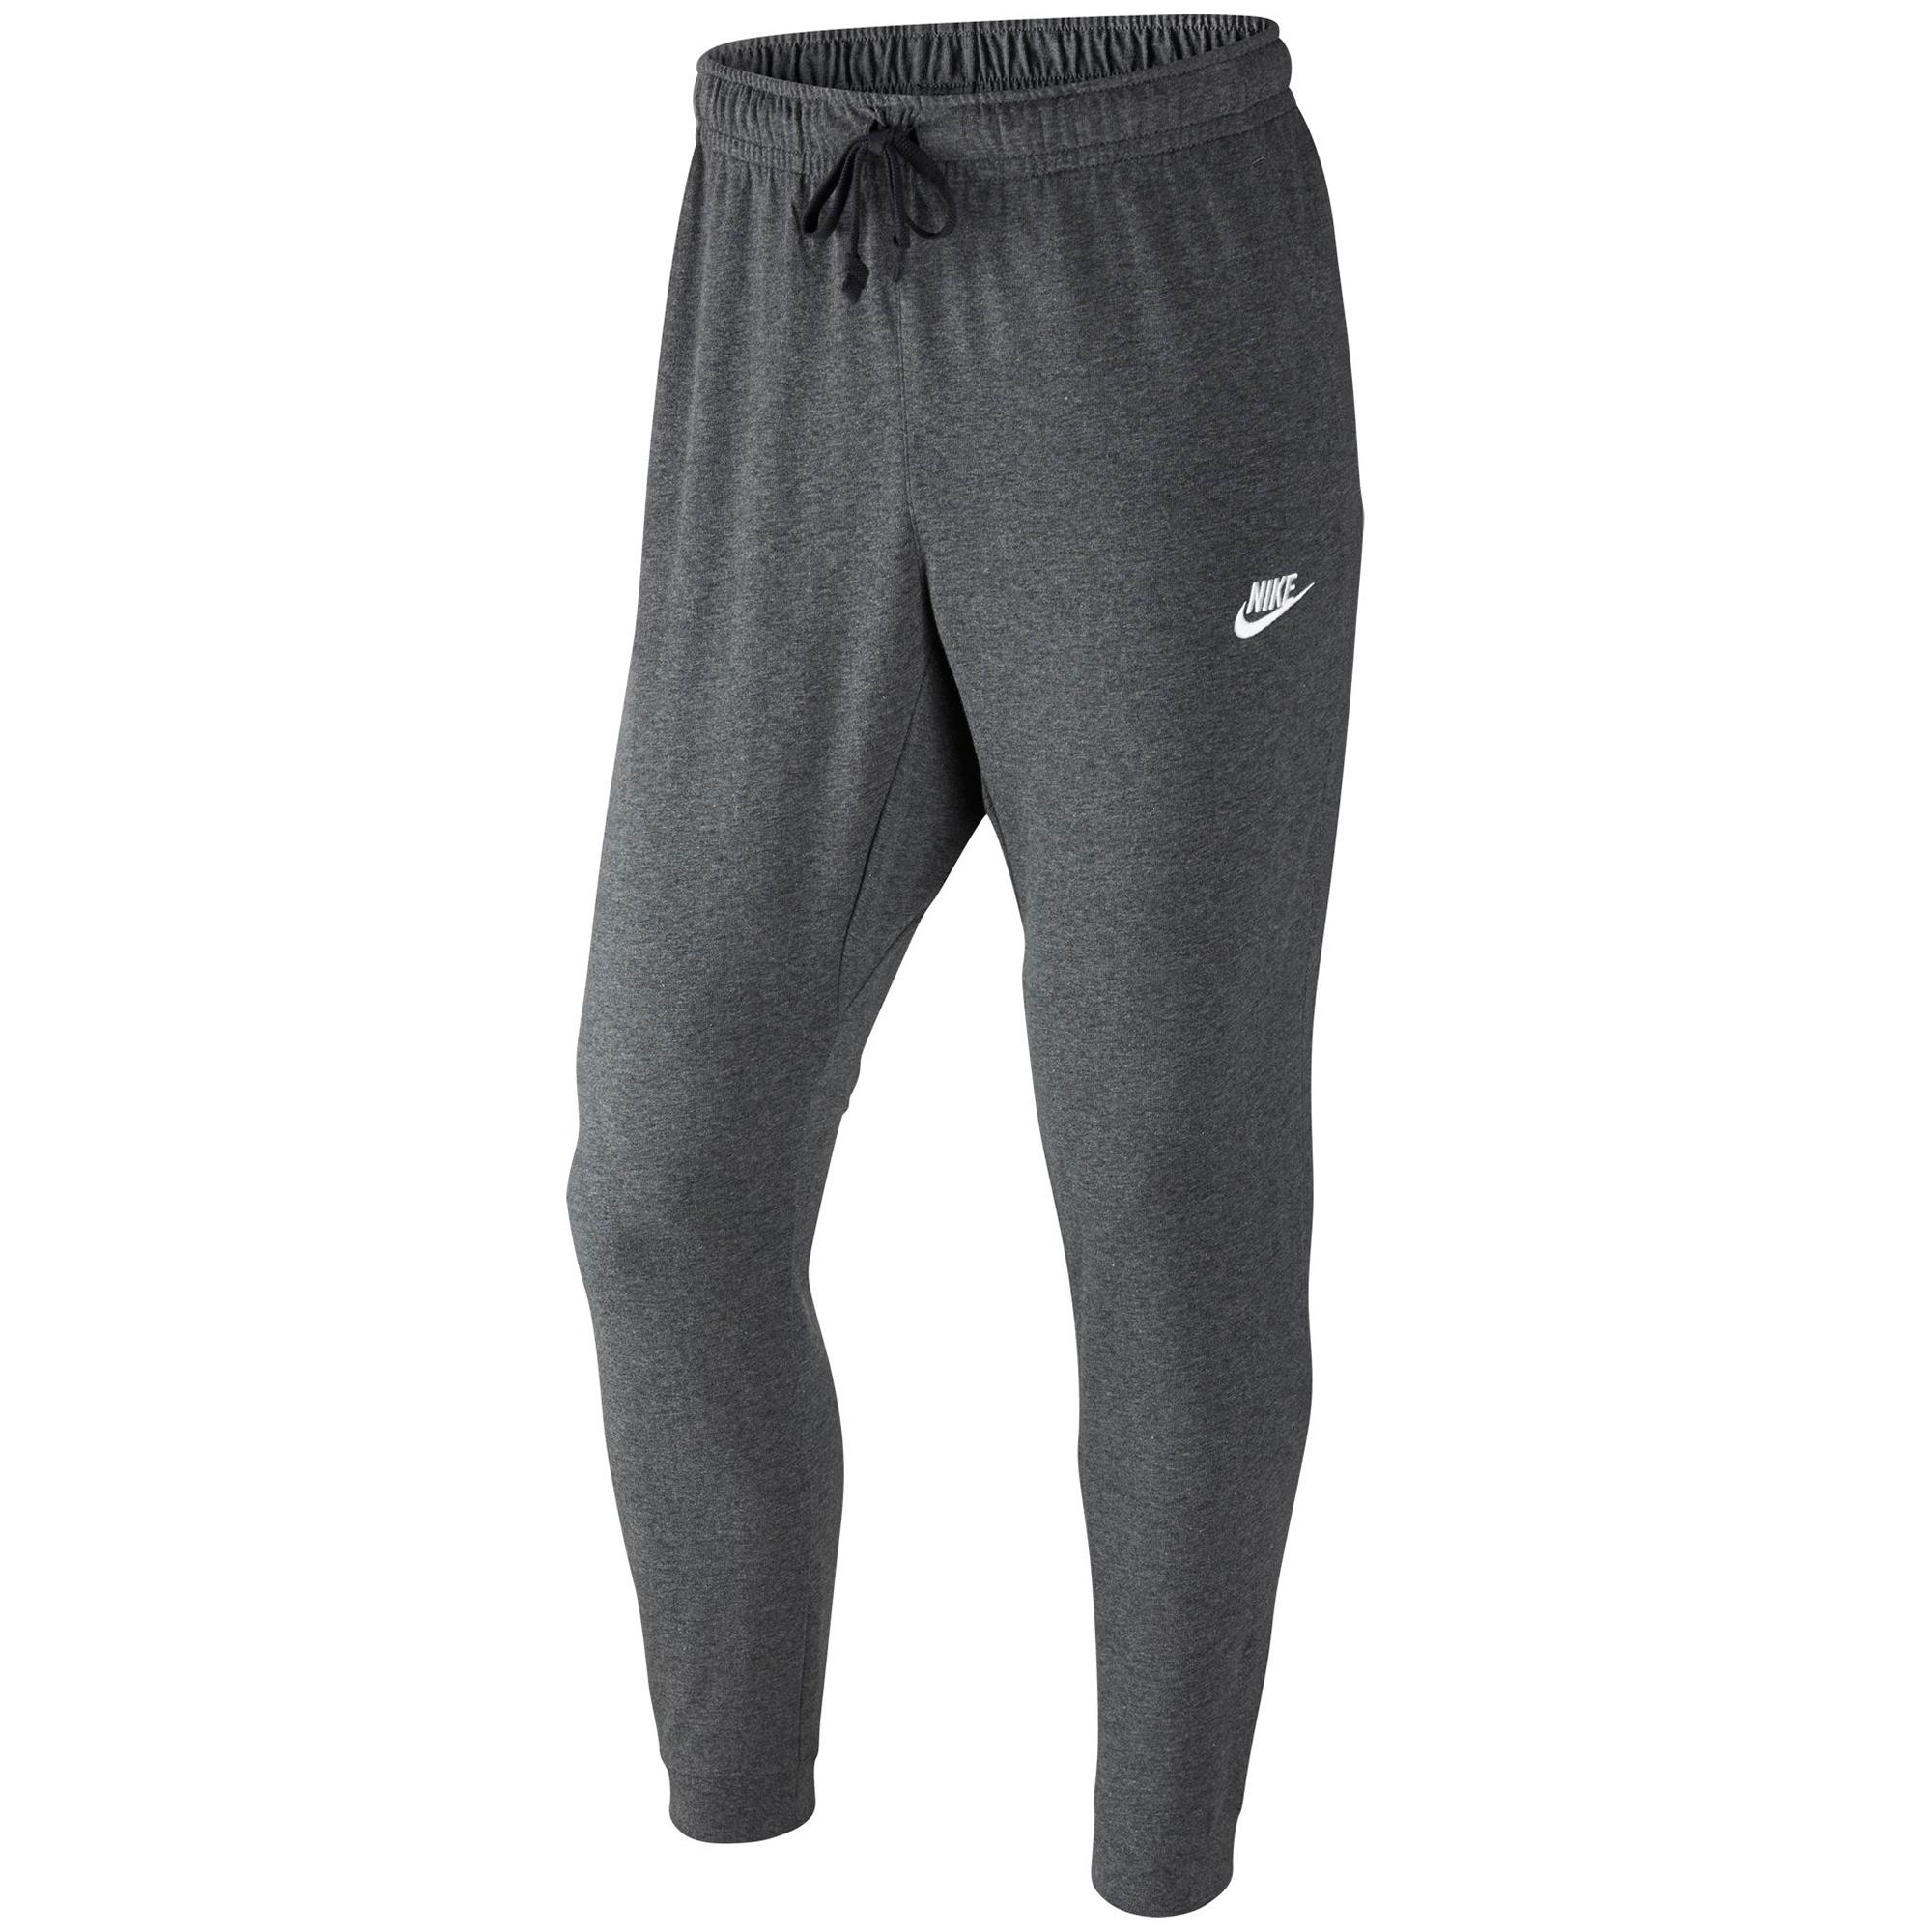 Nike Mens Sportswear Jogger - Charcoal Heather - Tennisnuts.com